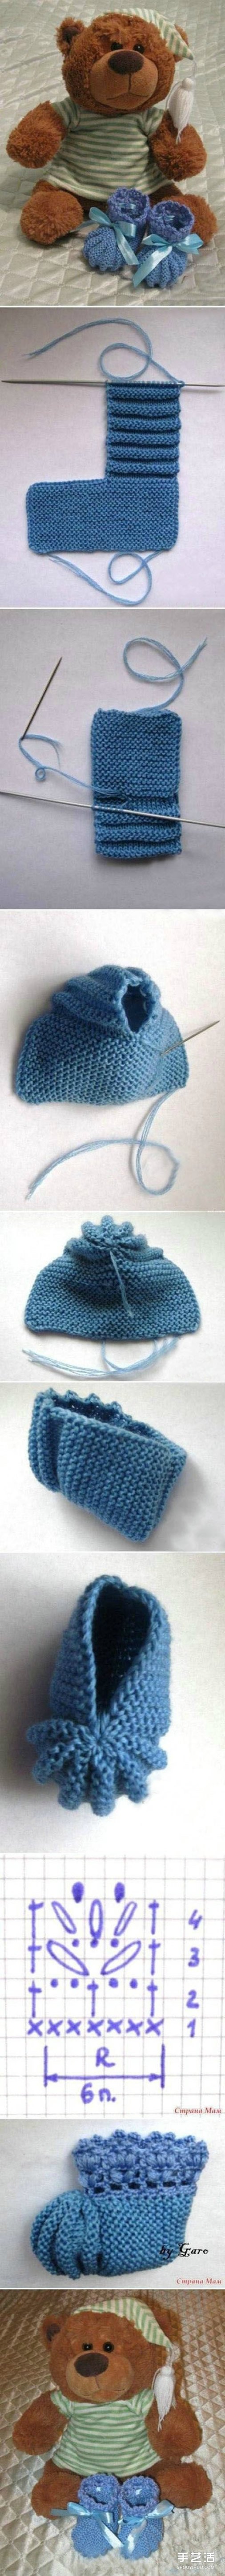 婴儿鞋的毛线编织方法 婴儿毛线鞋织法图解